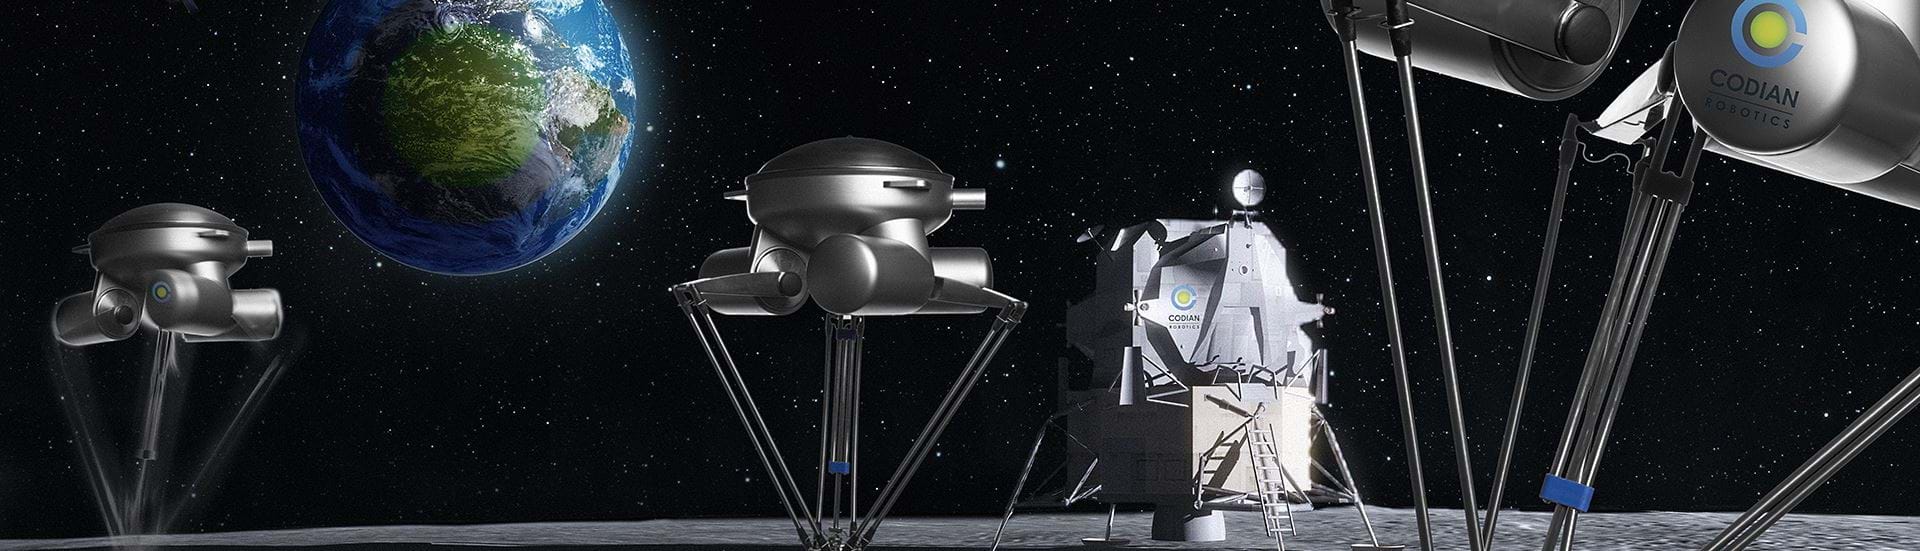 Topbillede med Delta Robotter og universet som baggrund